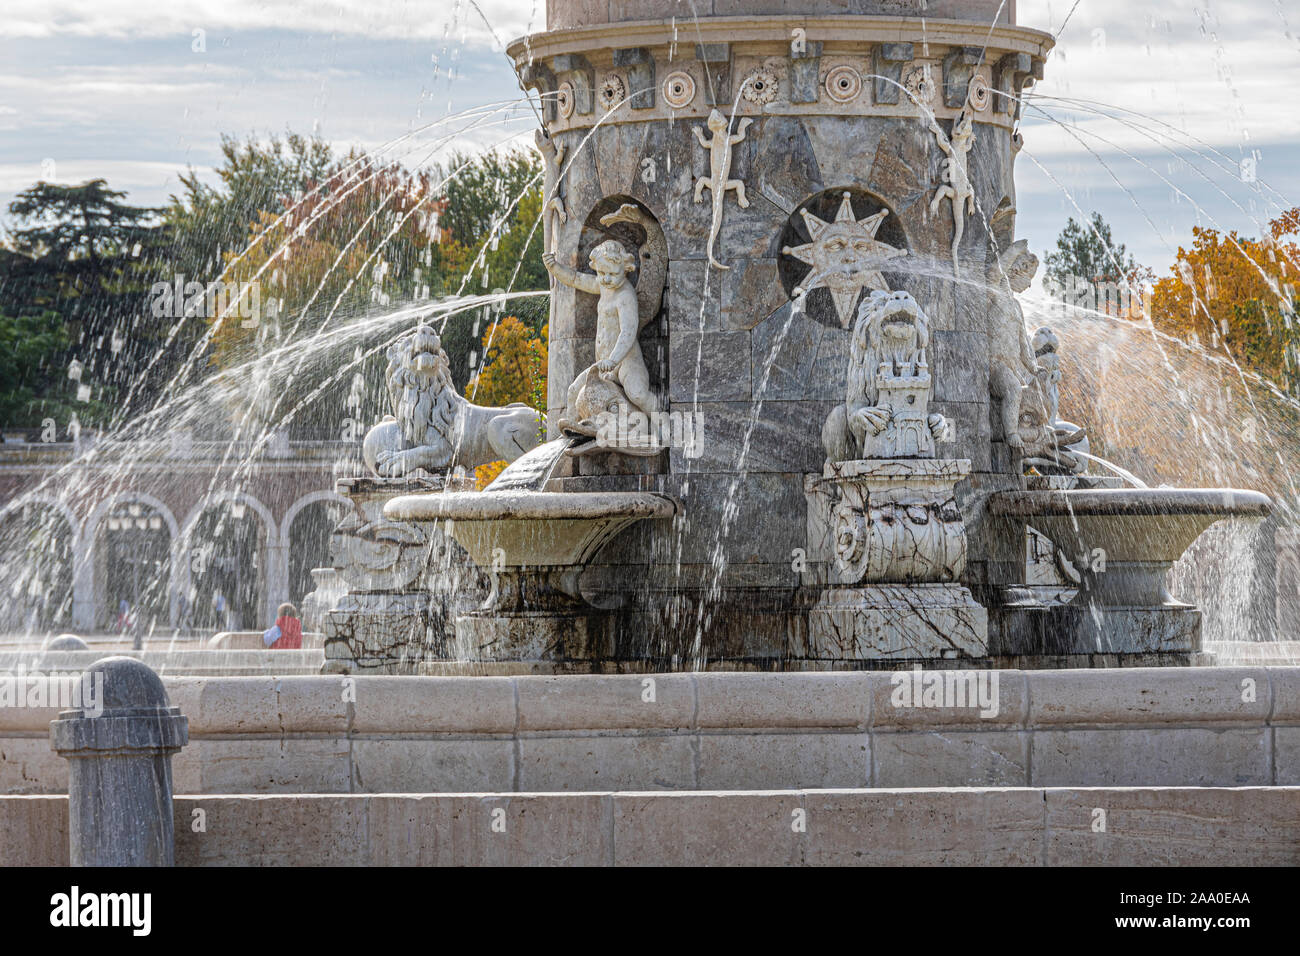 Detalle de la fuente de Floriblanca o Venus en la Plaza de San Antonio, en la entrada de la ciudad de Aranjuez. Comunidad de Madrid España Foto de stock